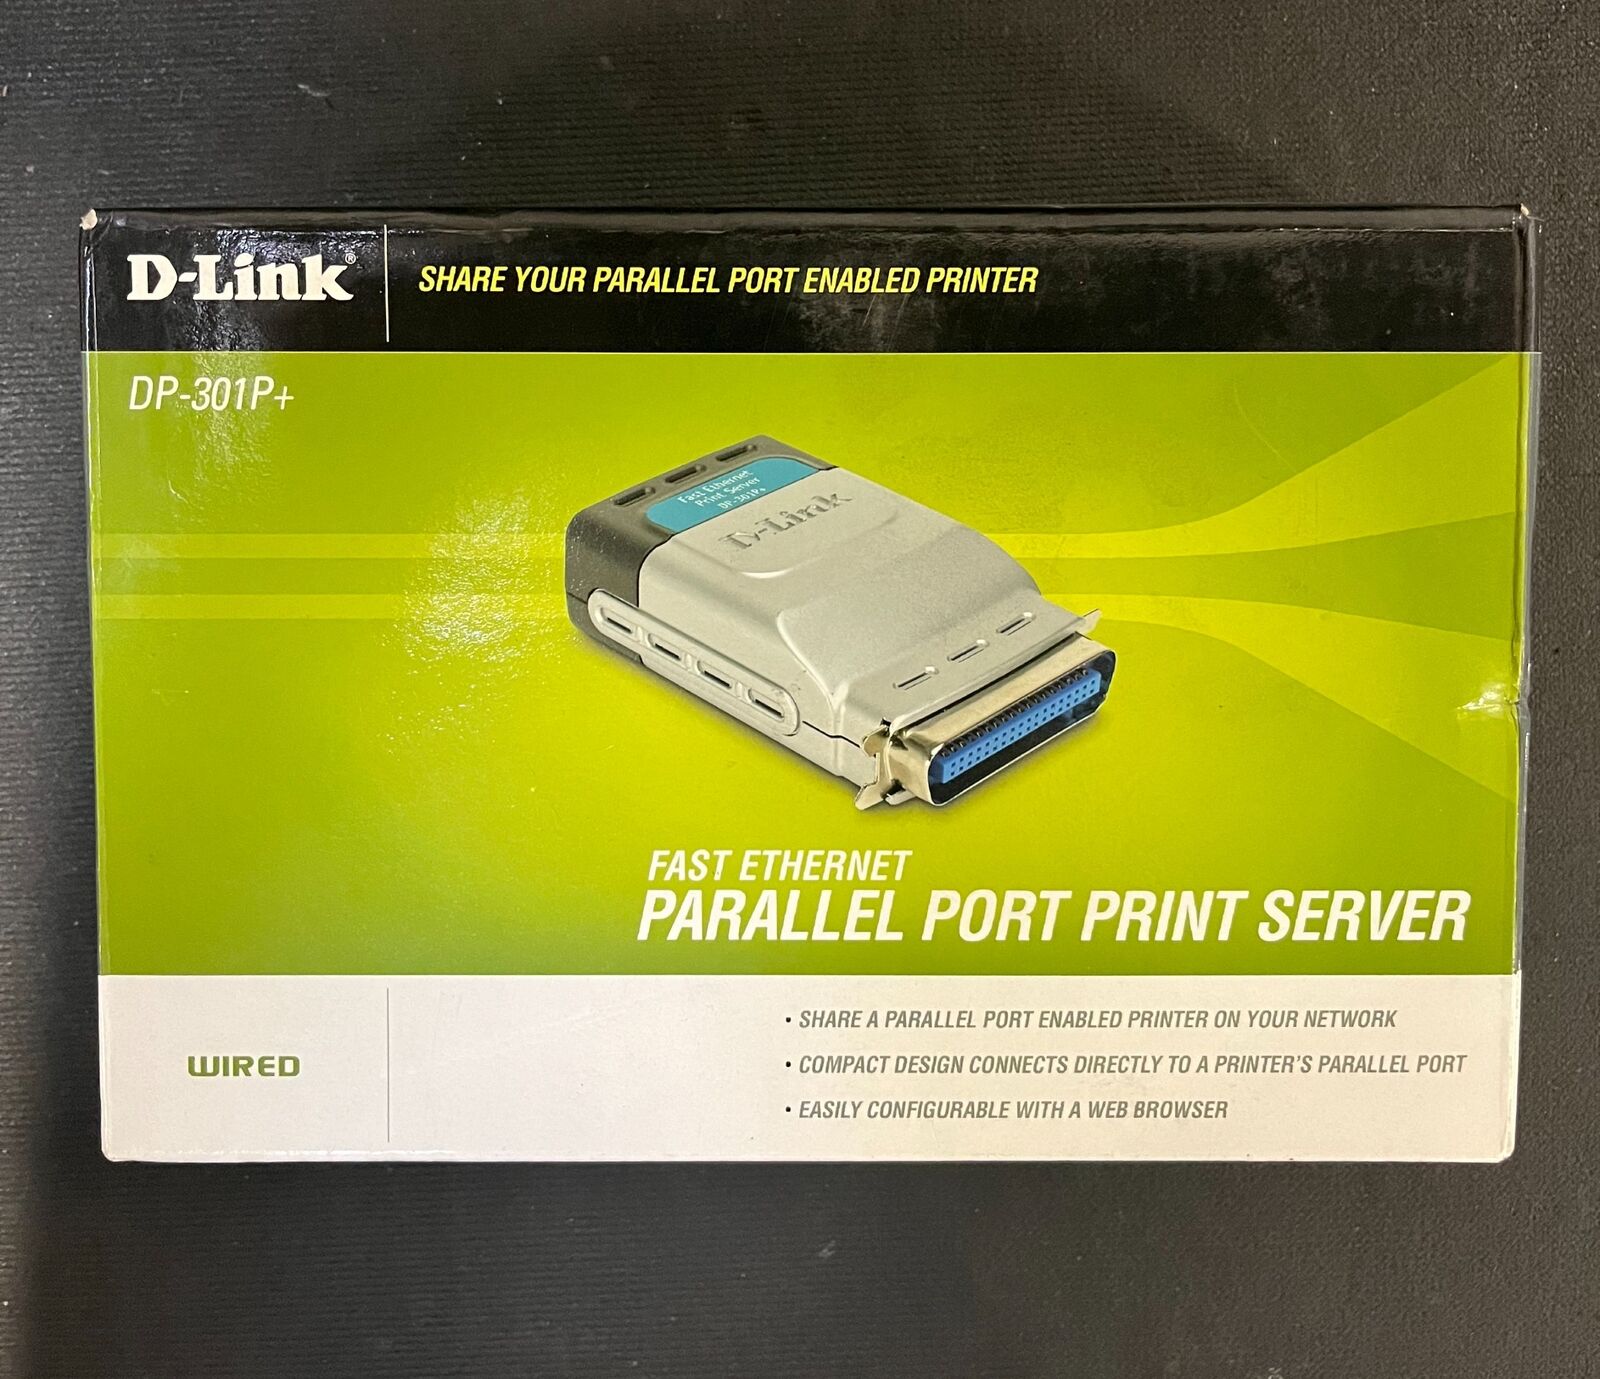 D-Link DP-301P+ 10/100 Fast Ethernet Parallel Port Print Server